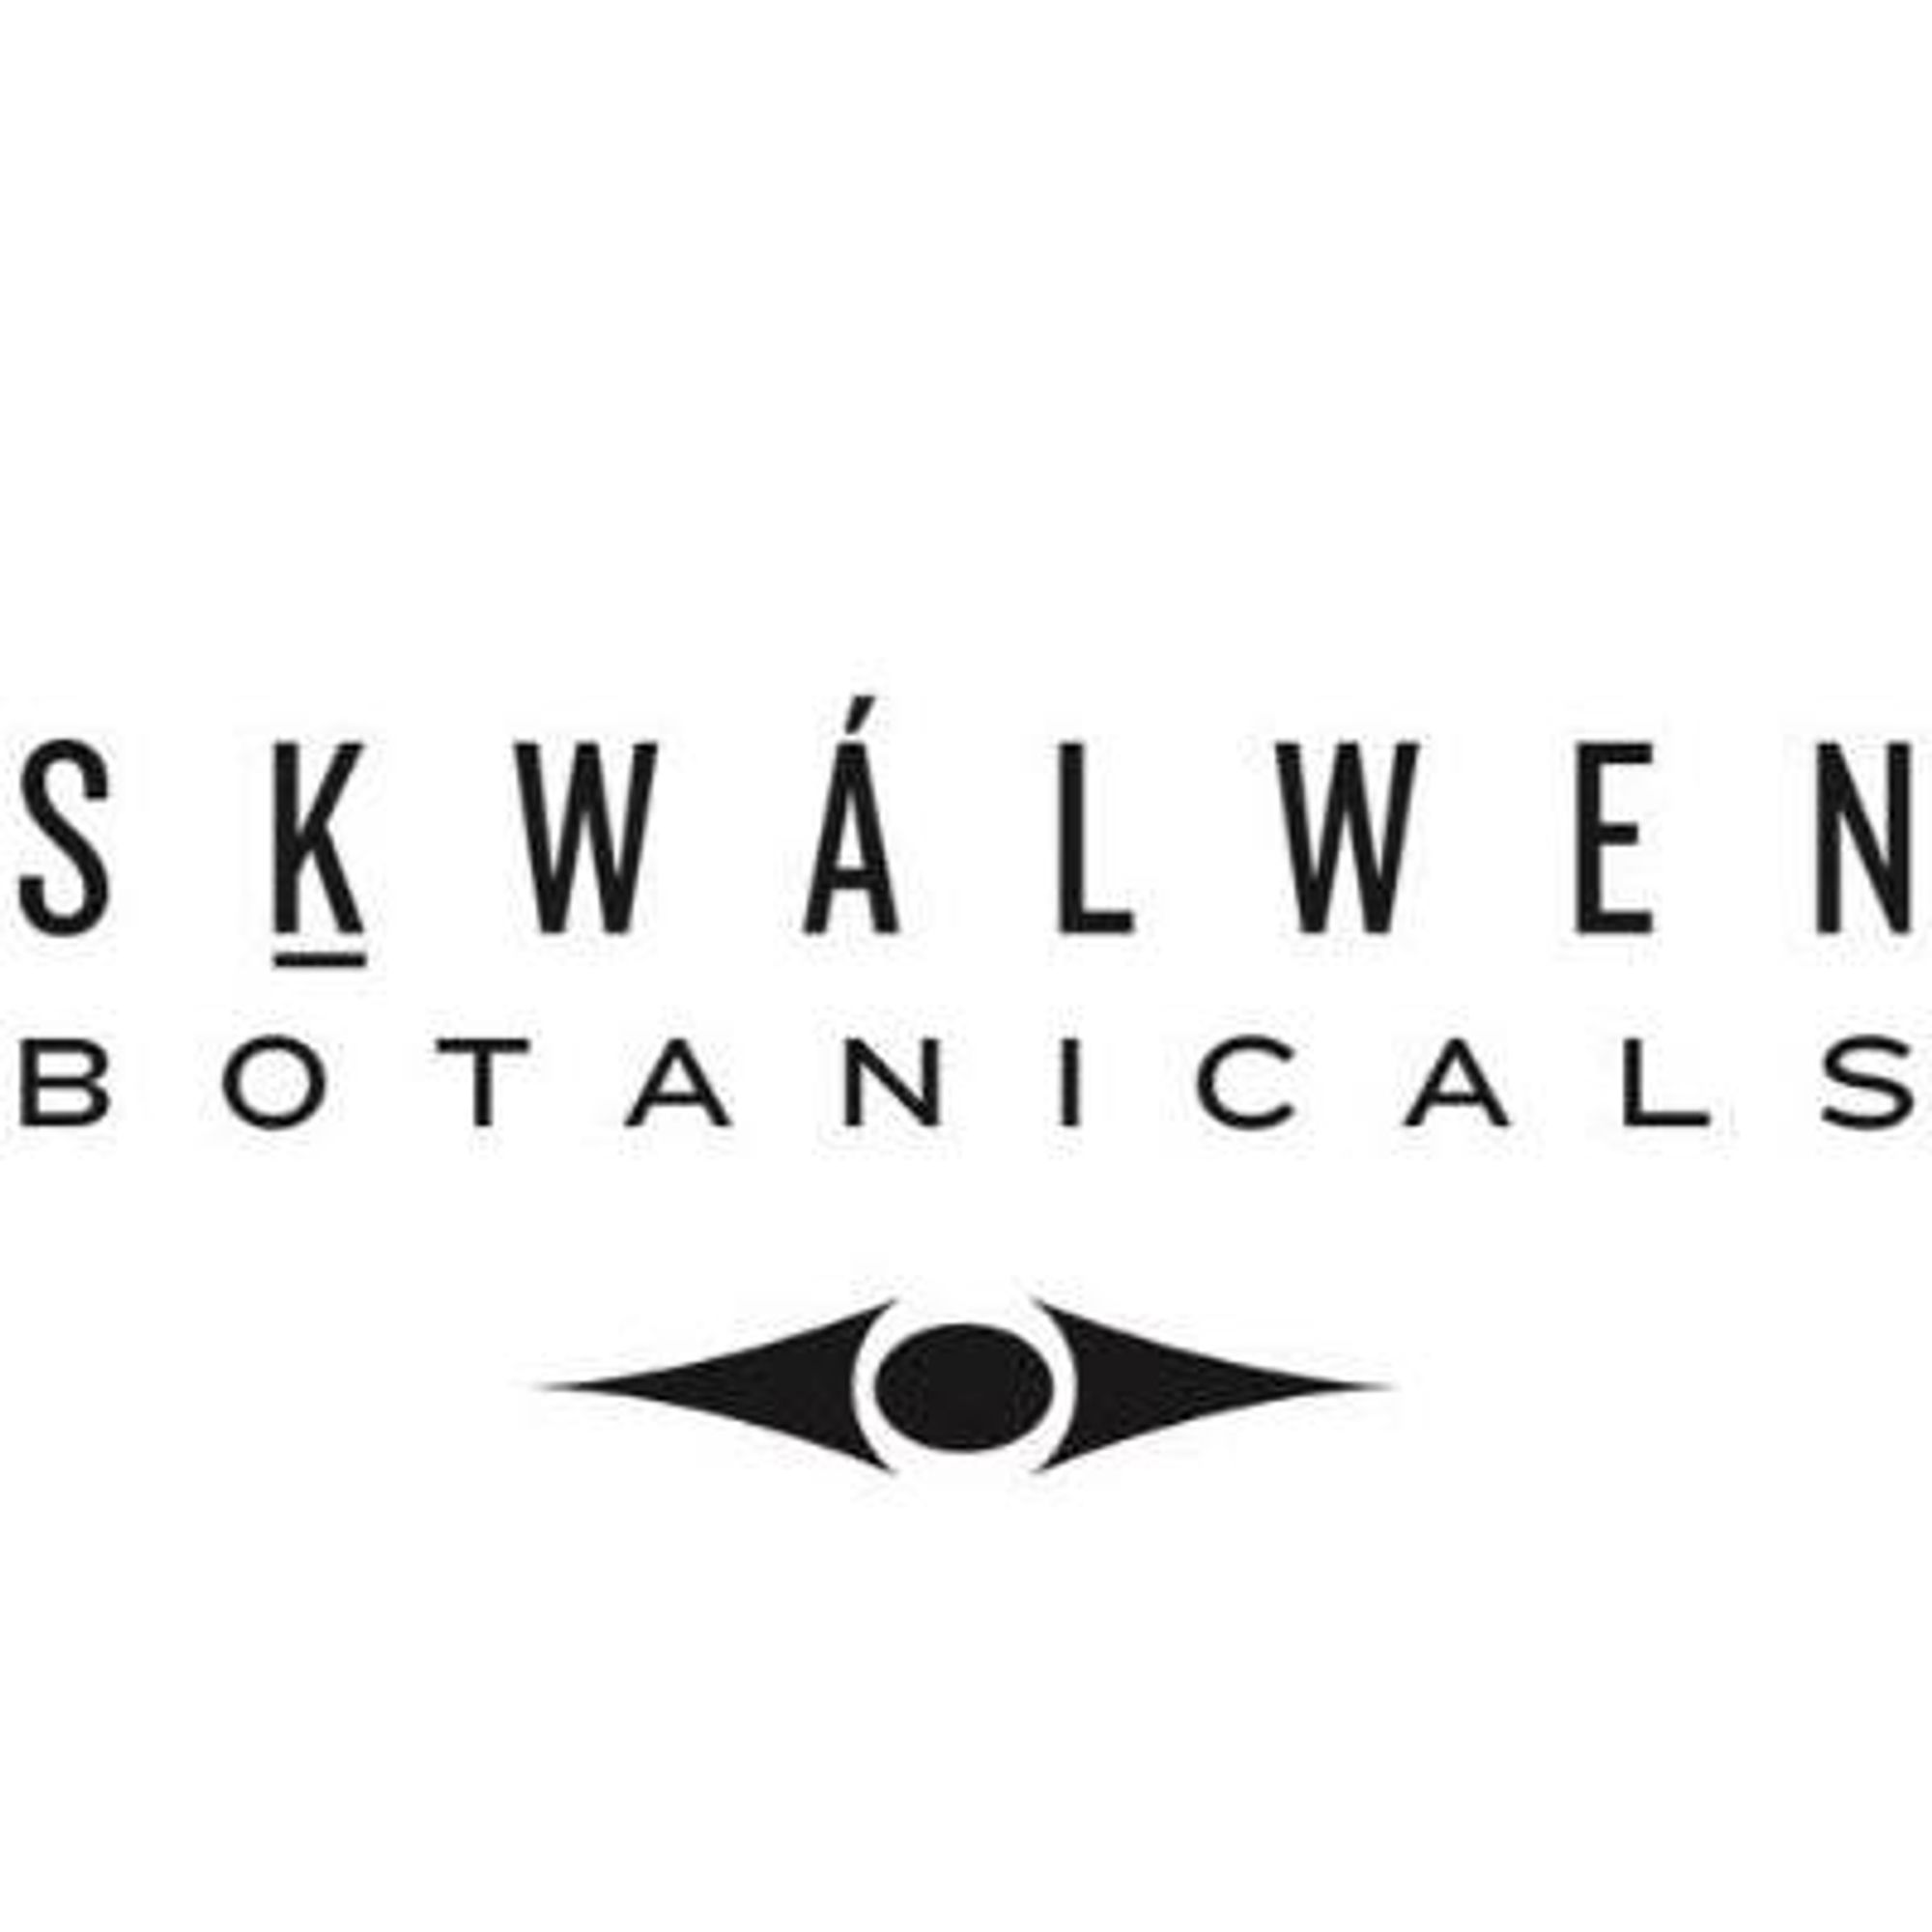 Skwálwen Botanicals